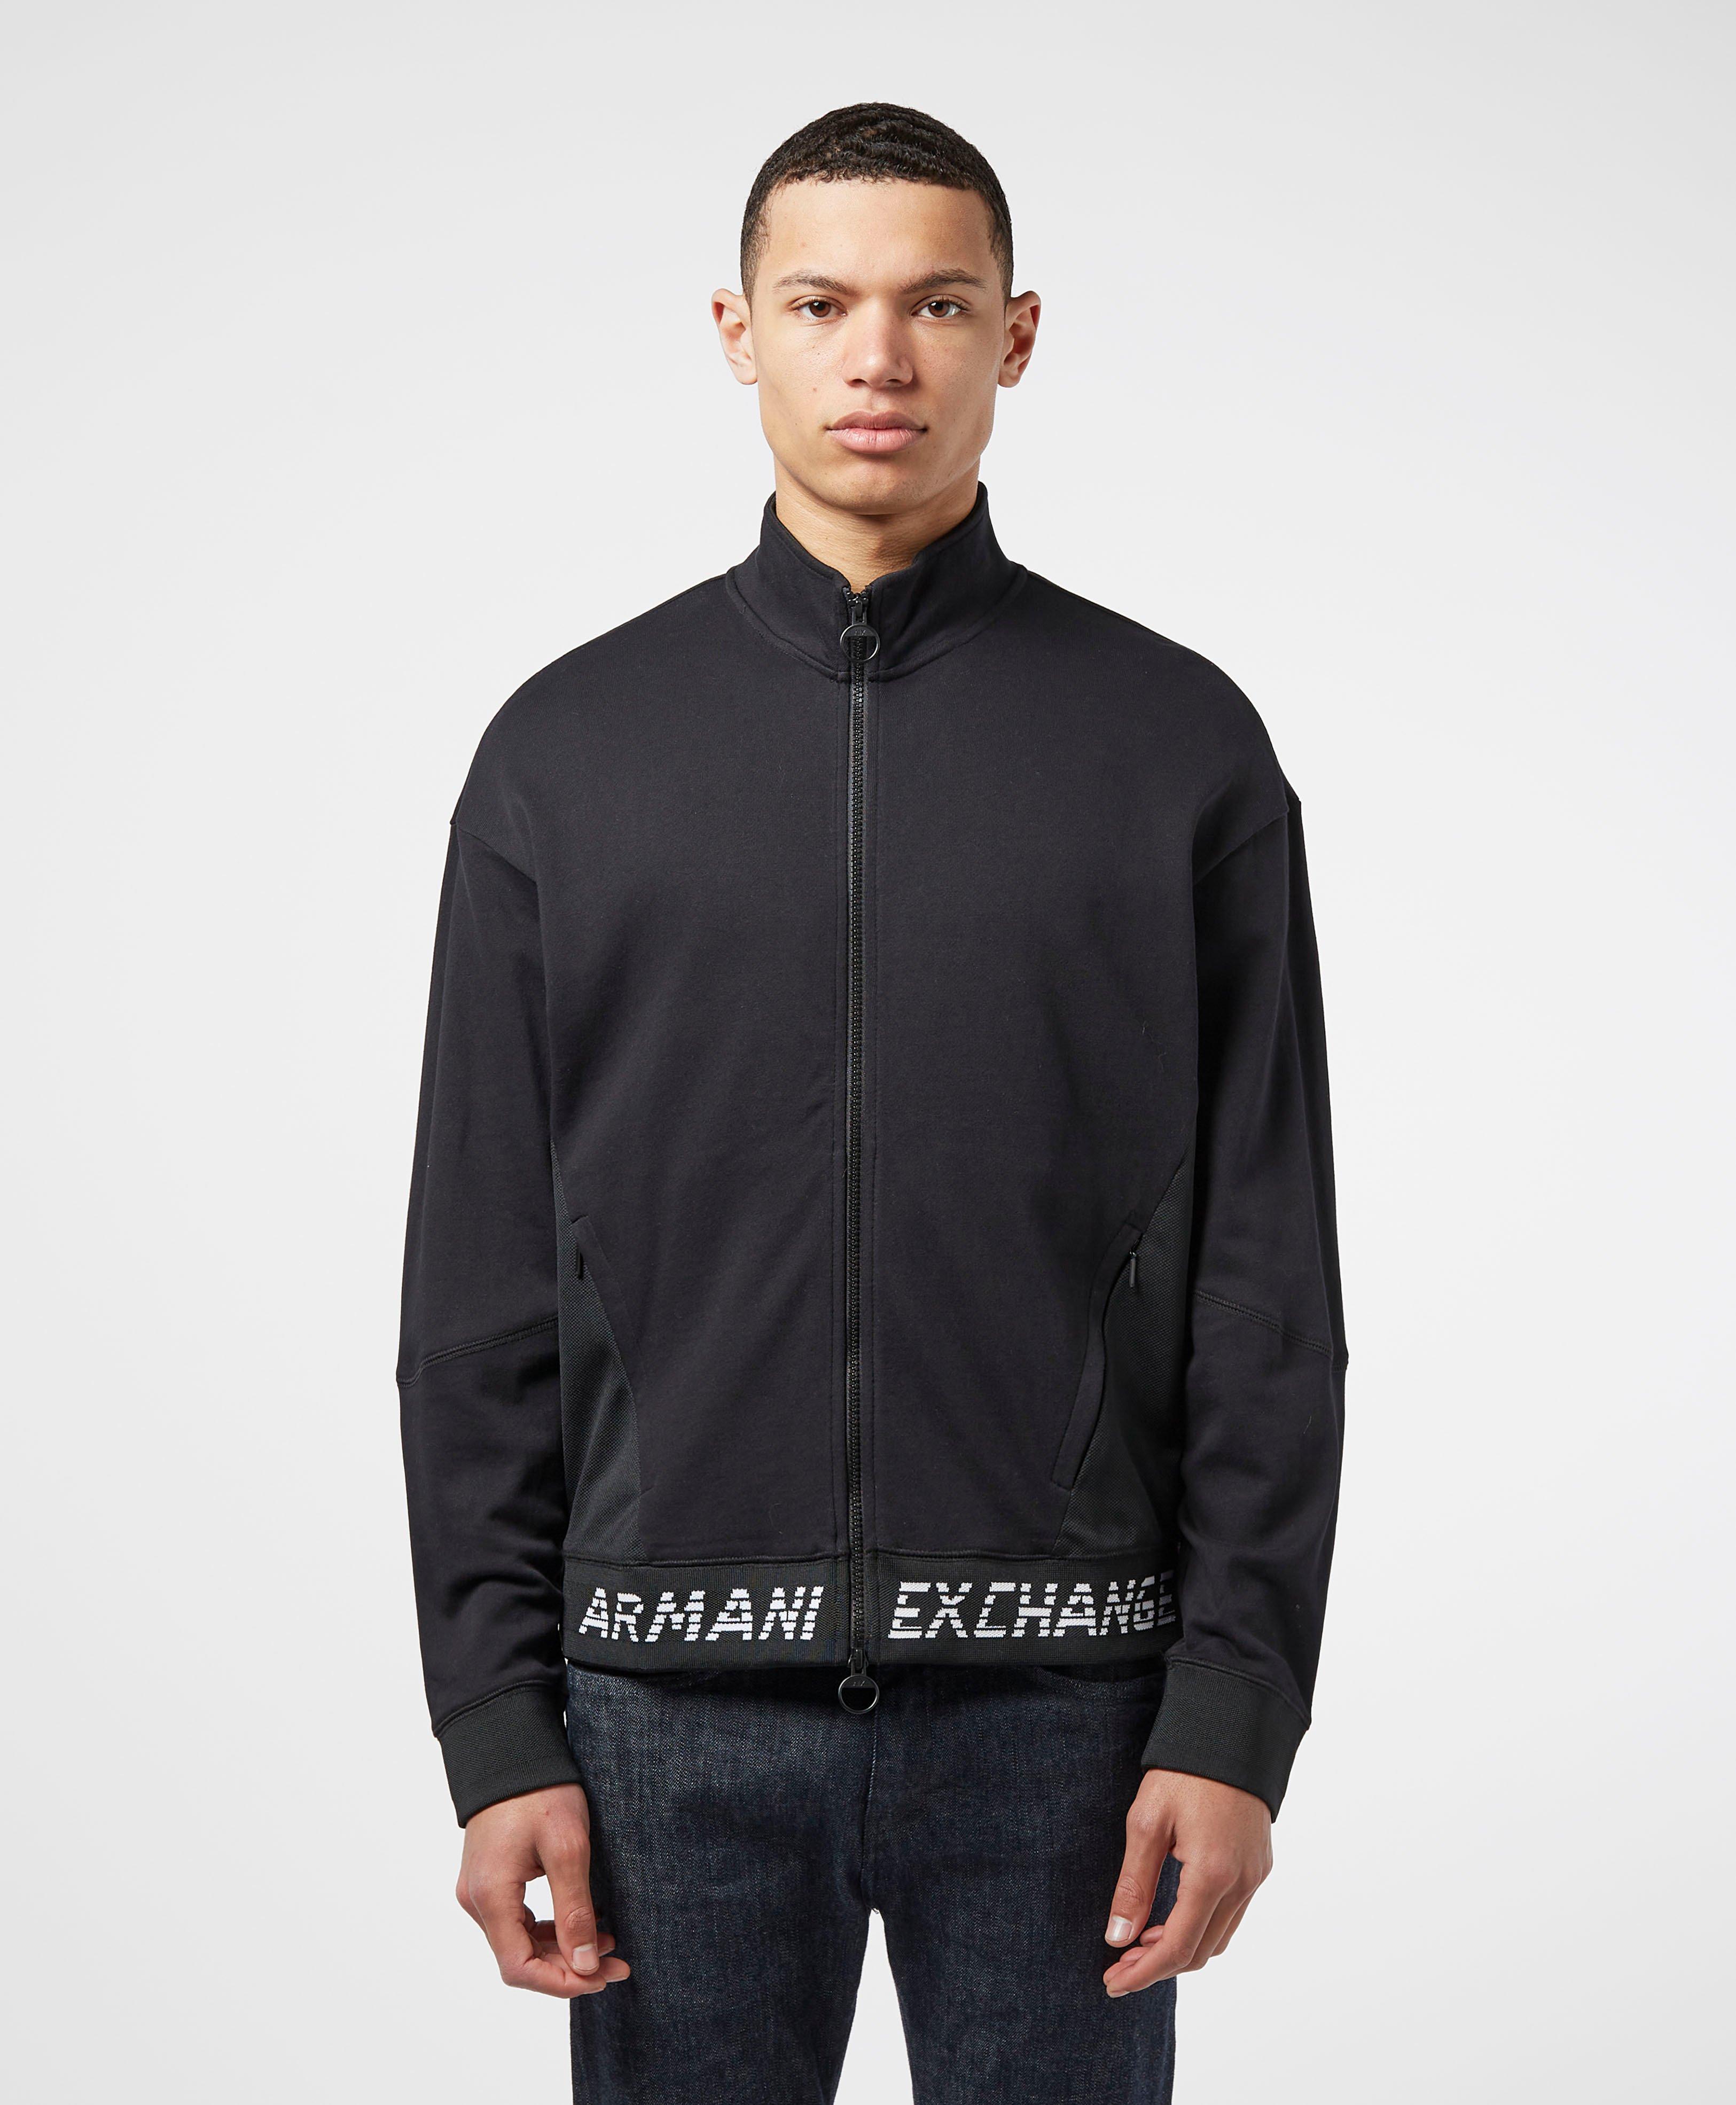 armani exchange track jacket